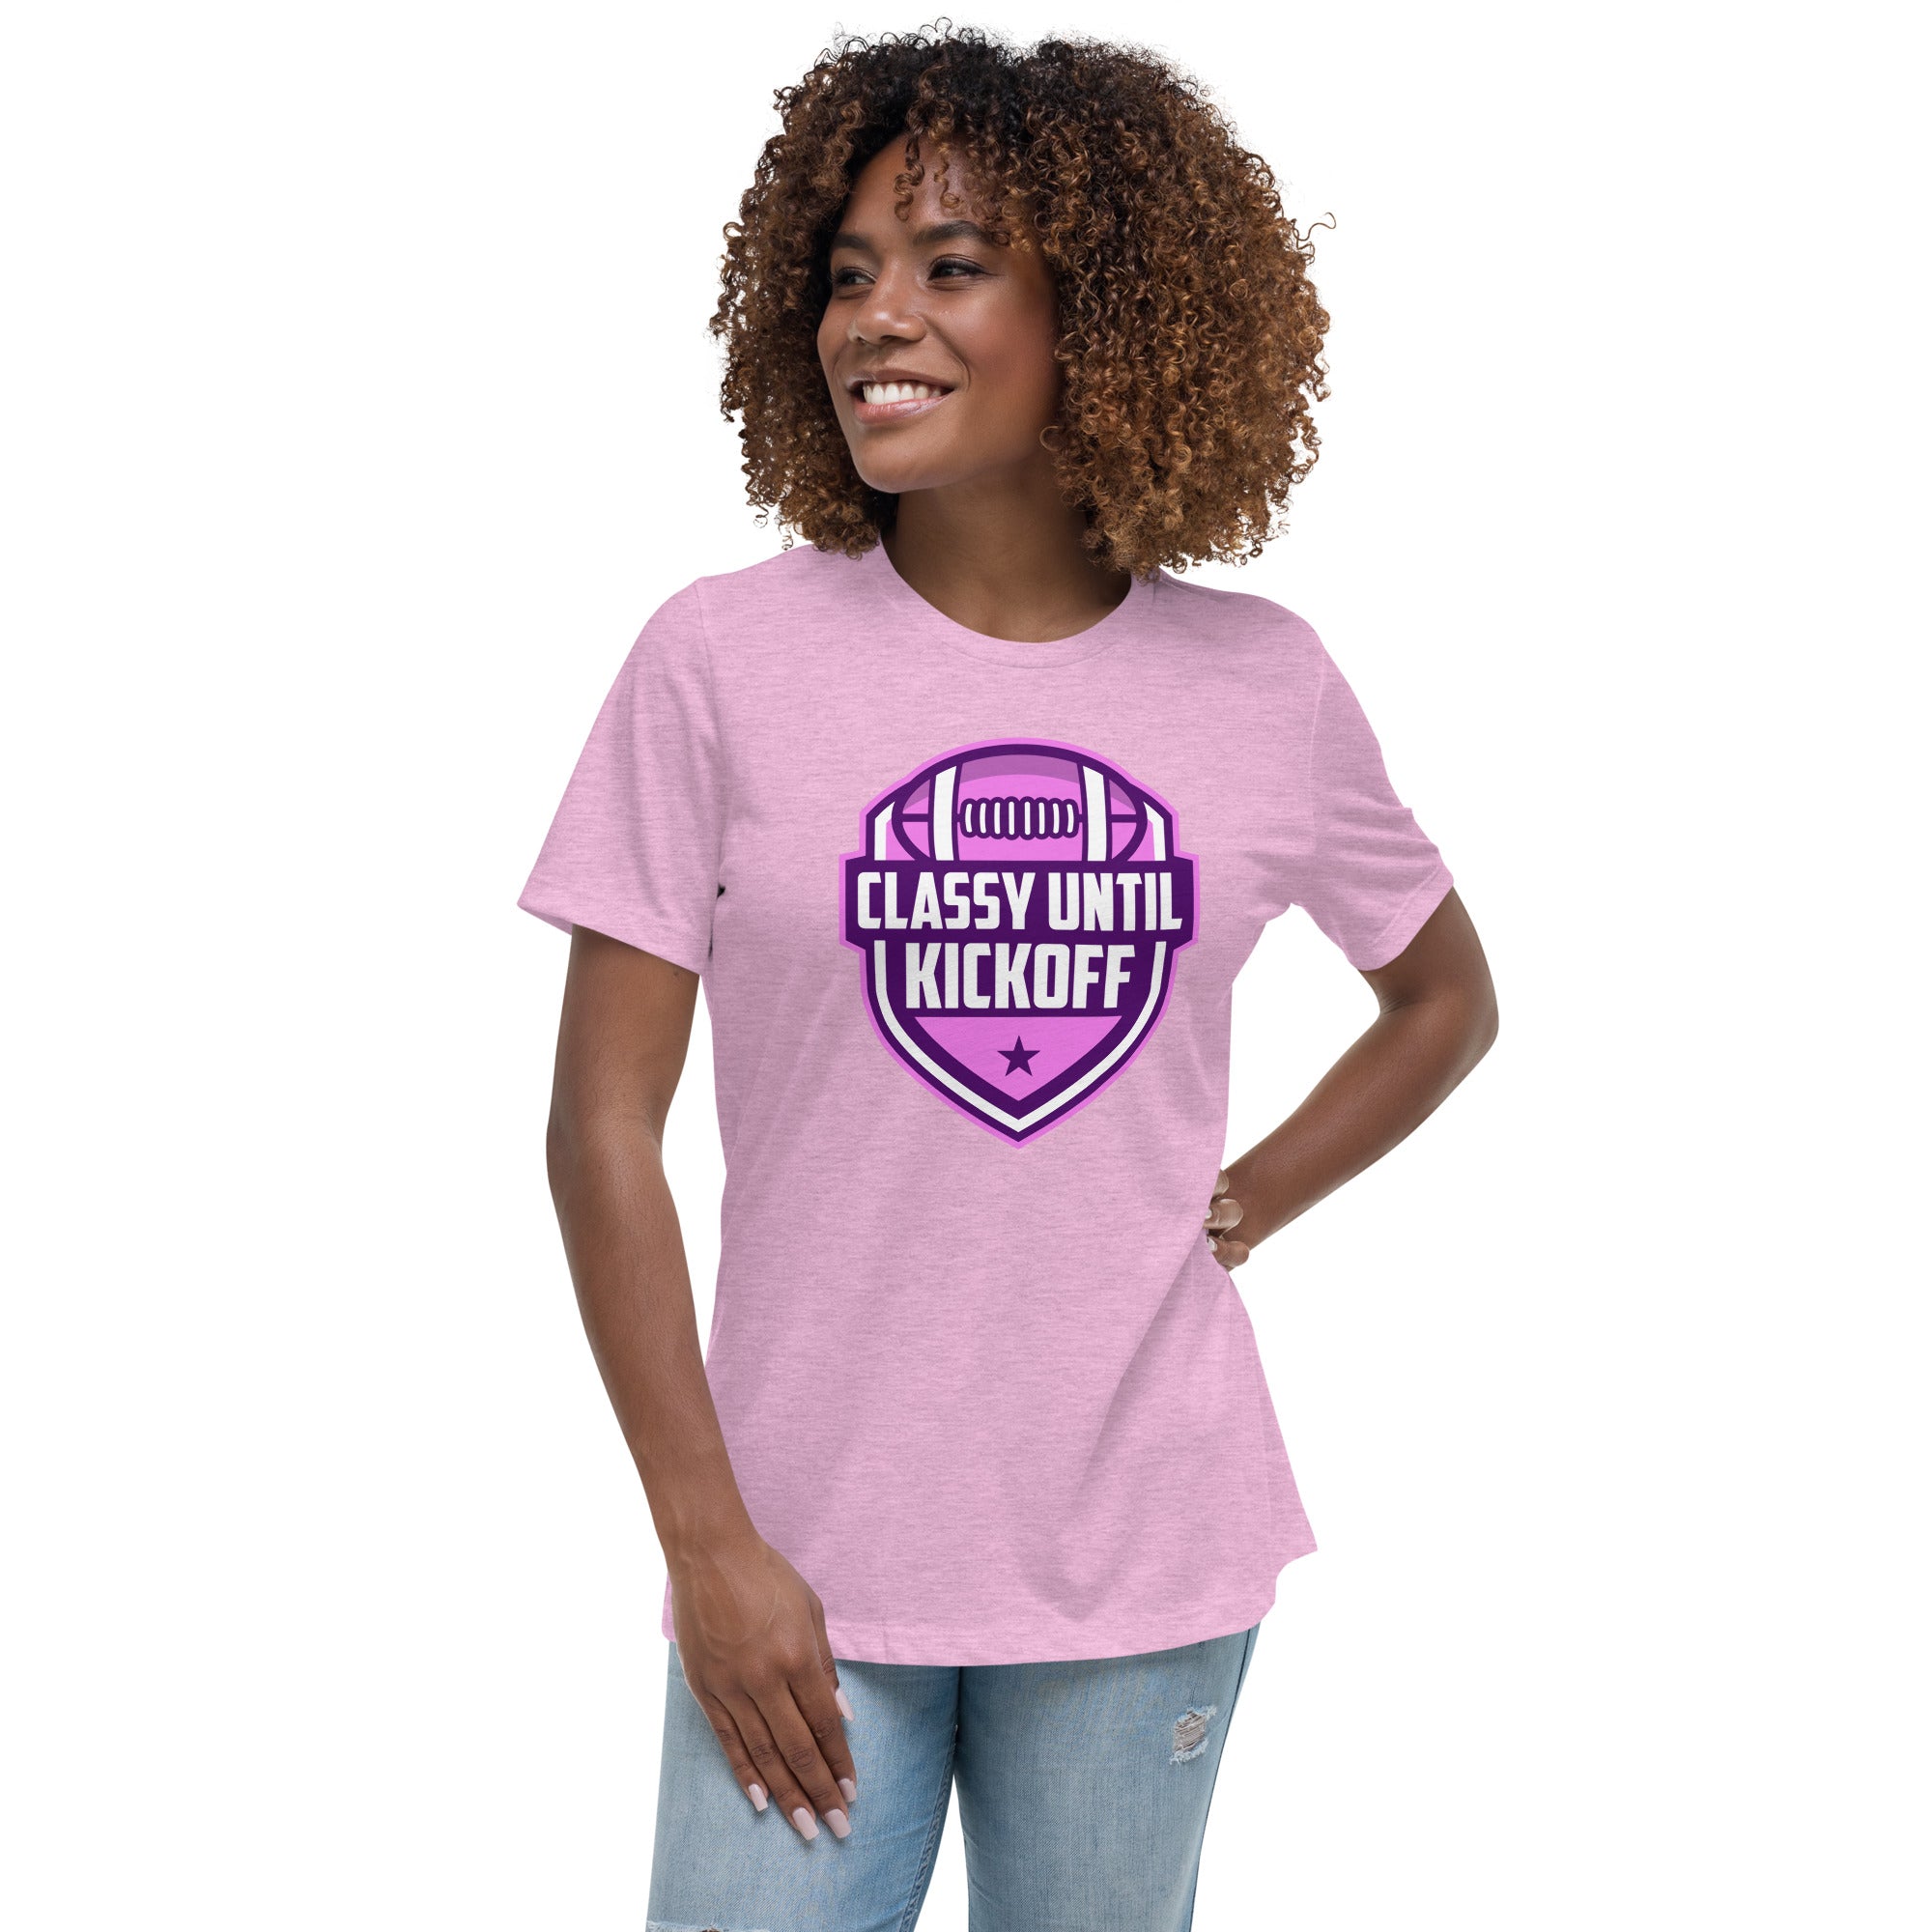 Classy Until KickOff Women's Premium Fit T-Shirt